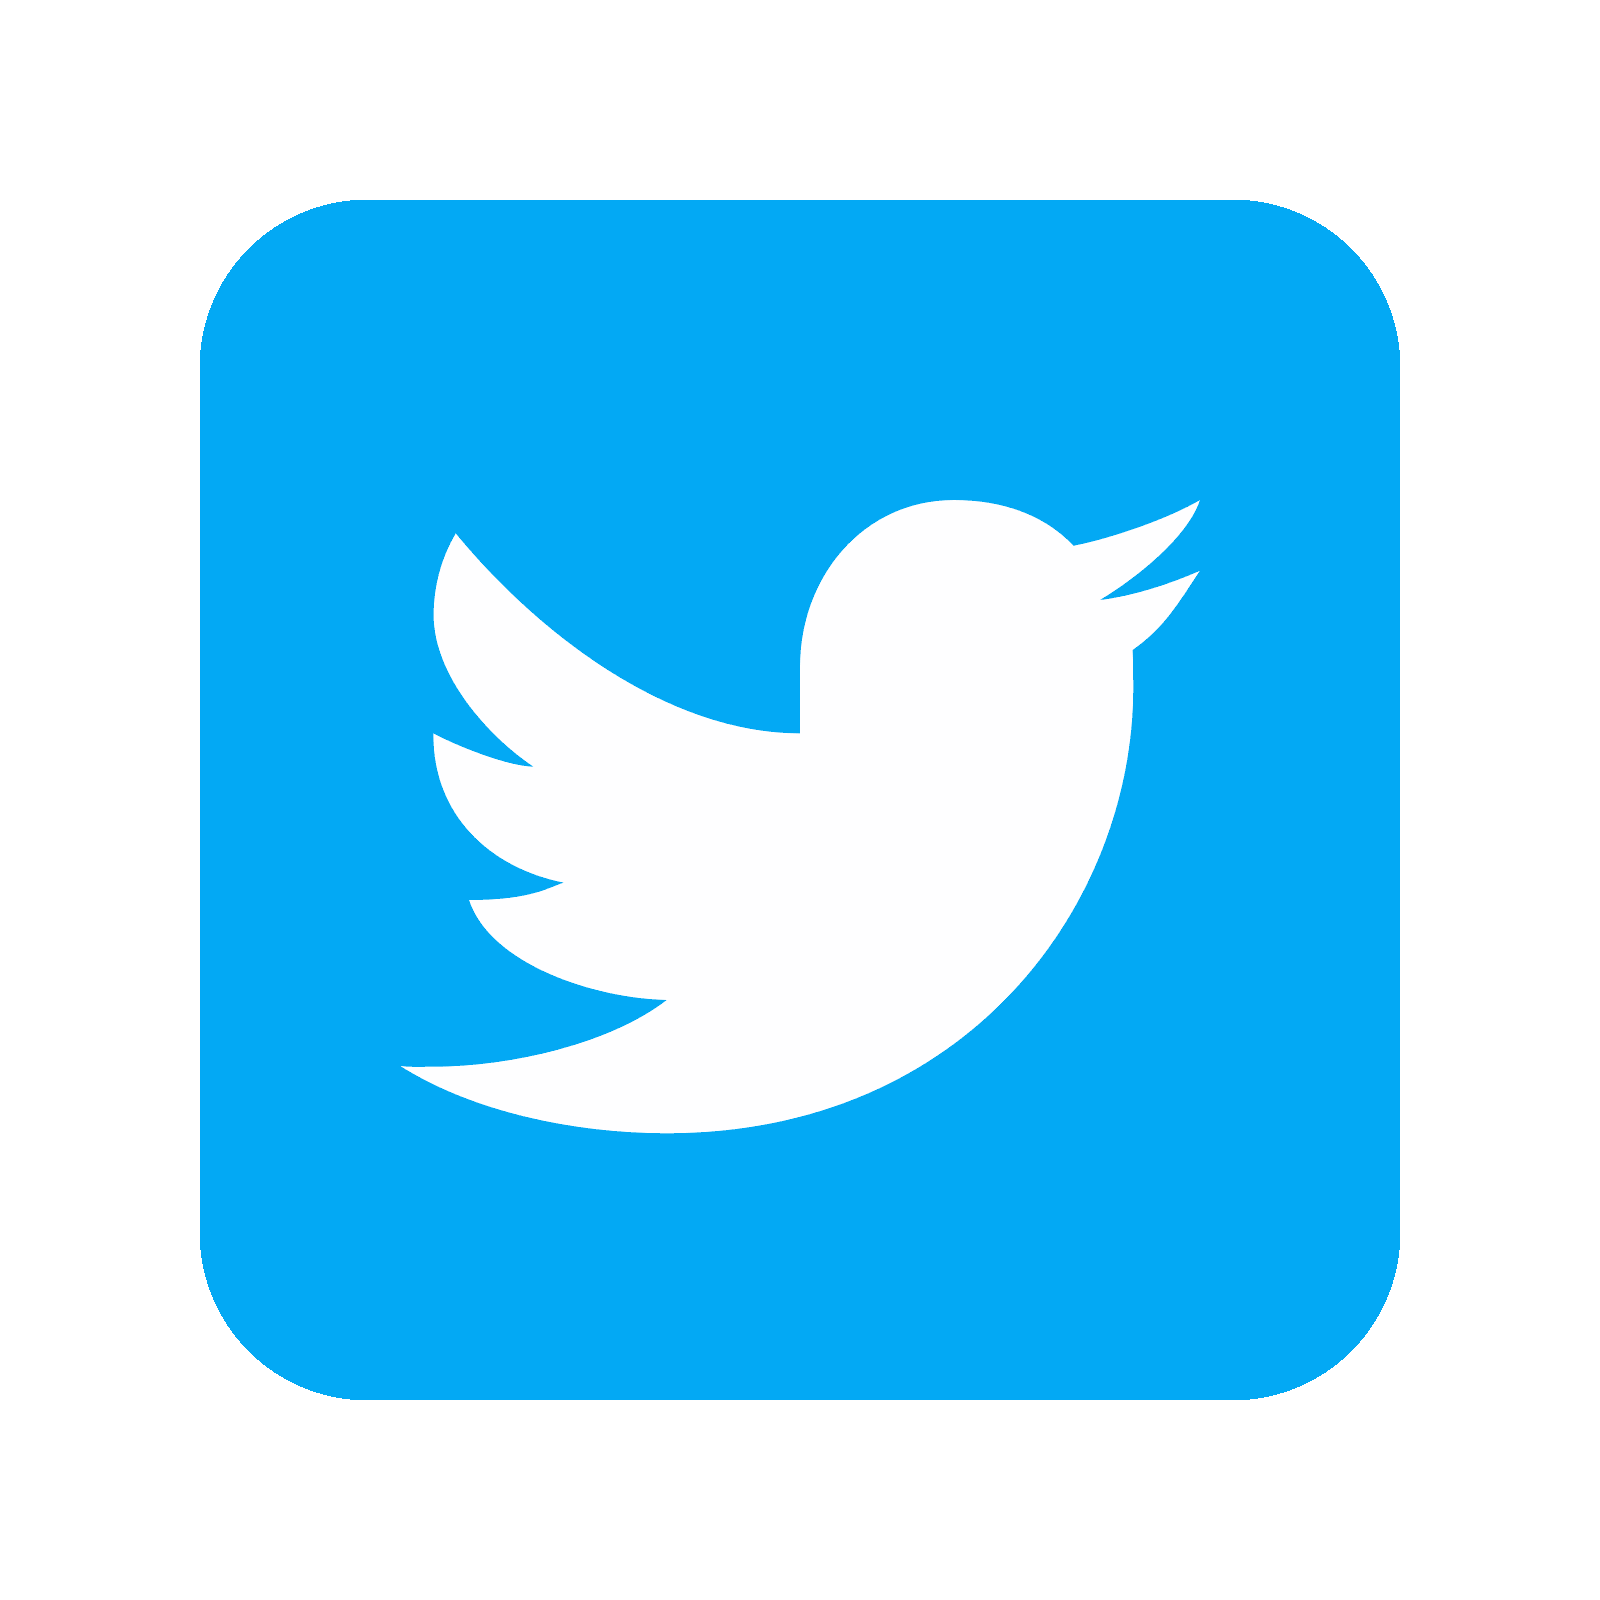 Twitter Logo PNG Free Image